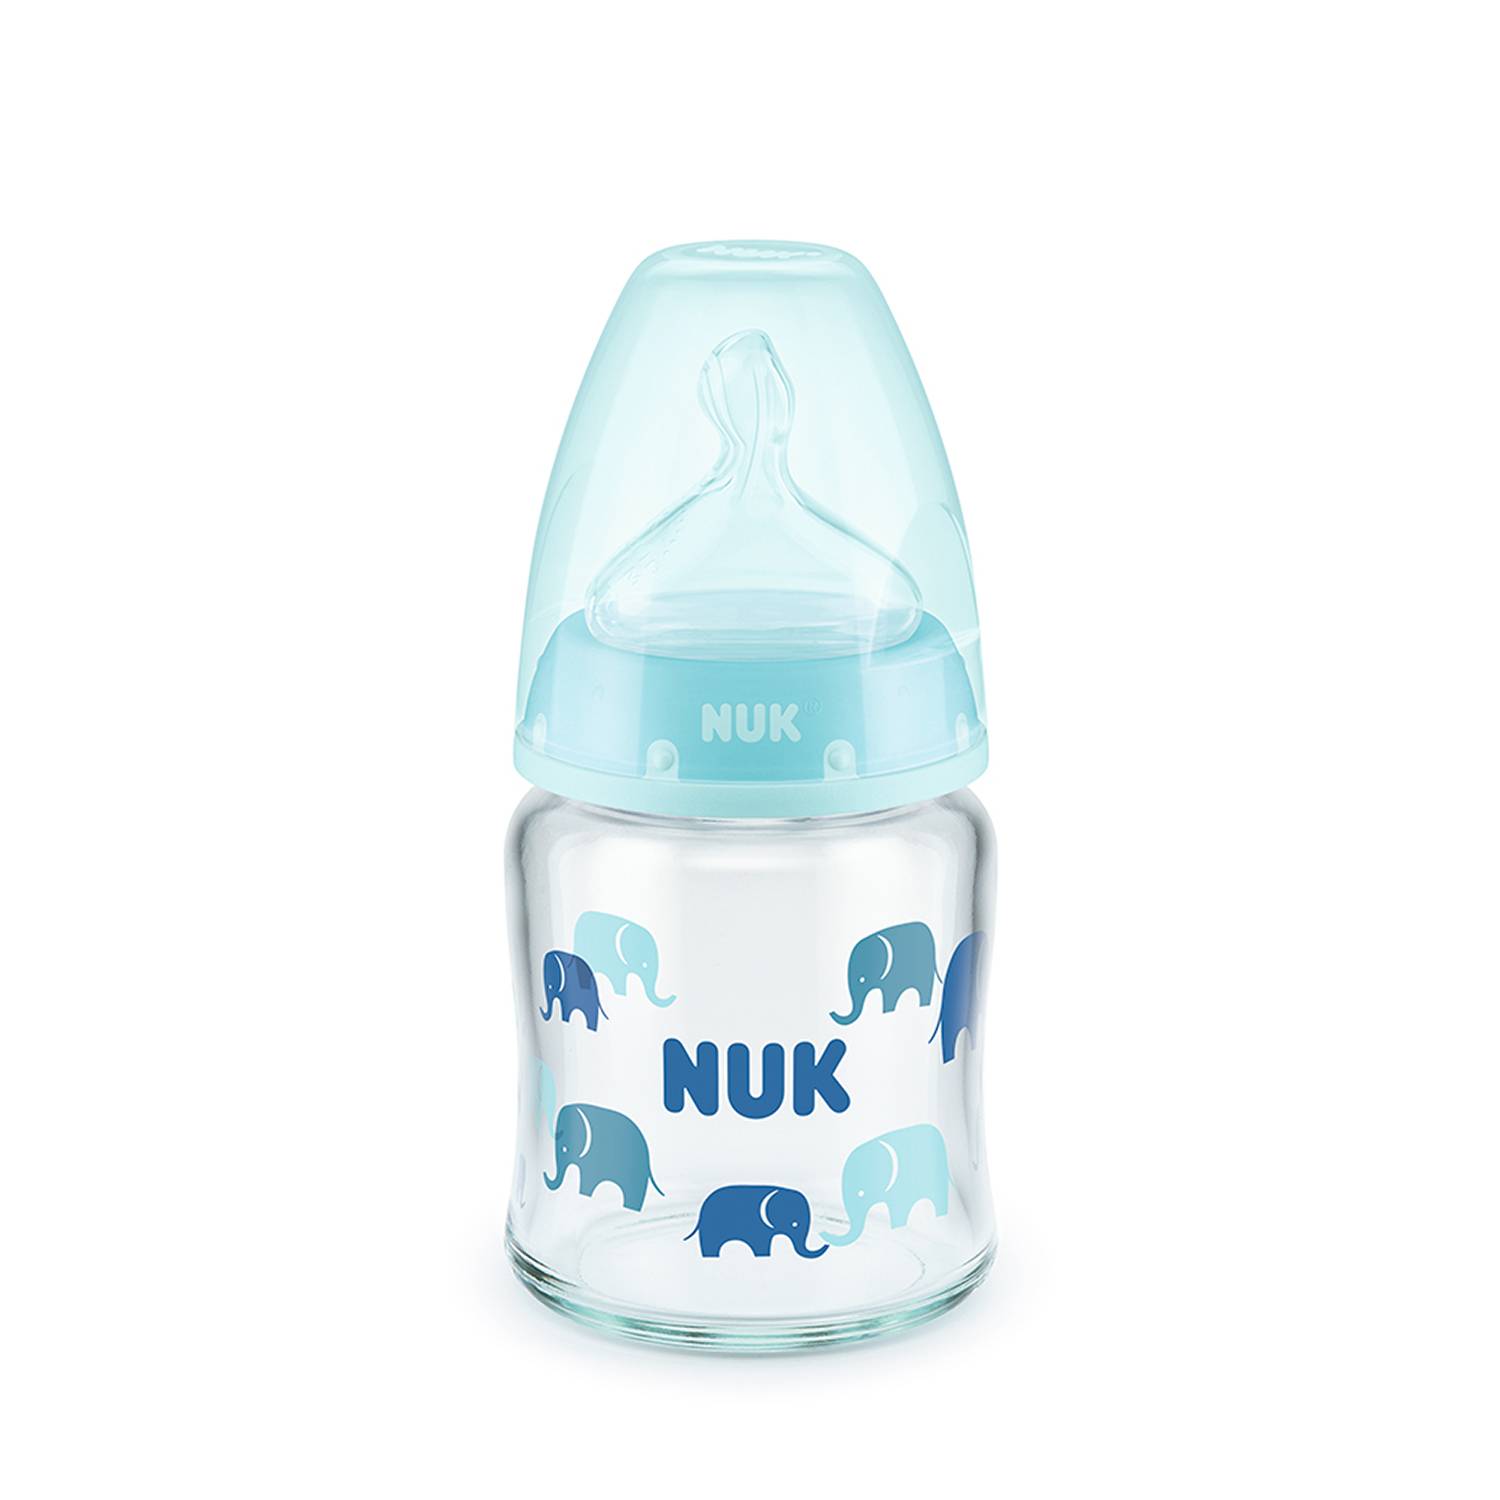 NUK First Choice+ Juego de iniciadores de biberones de cristal y